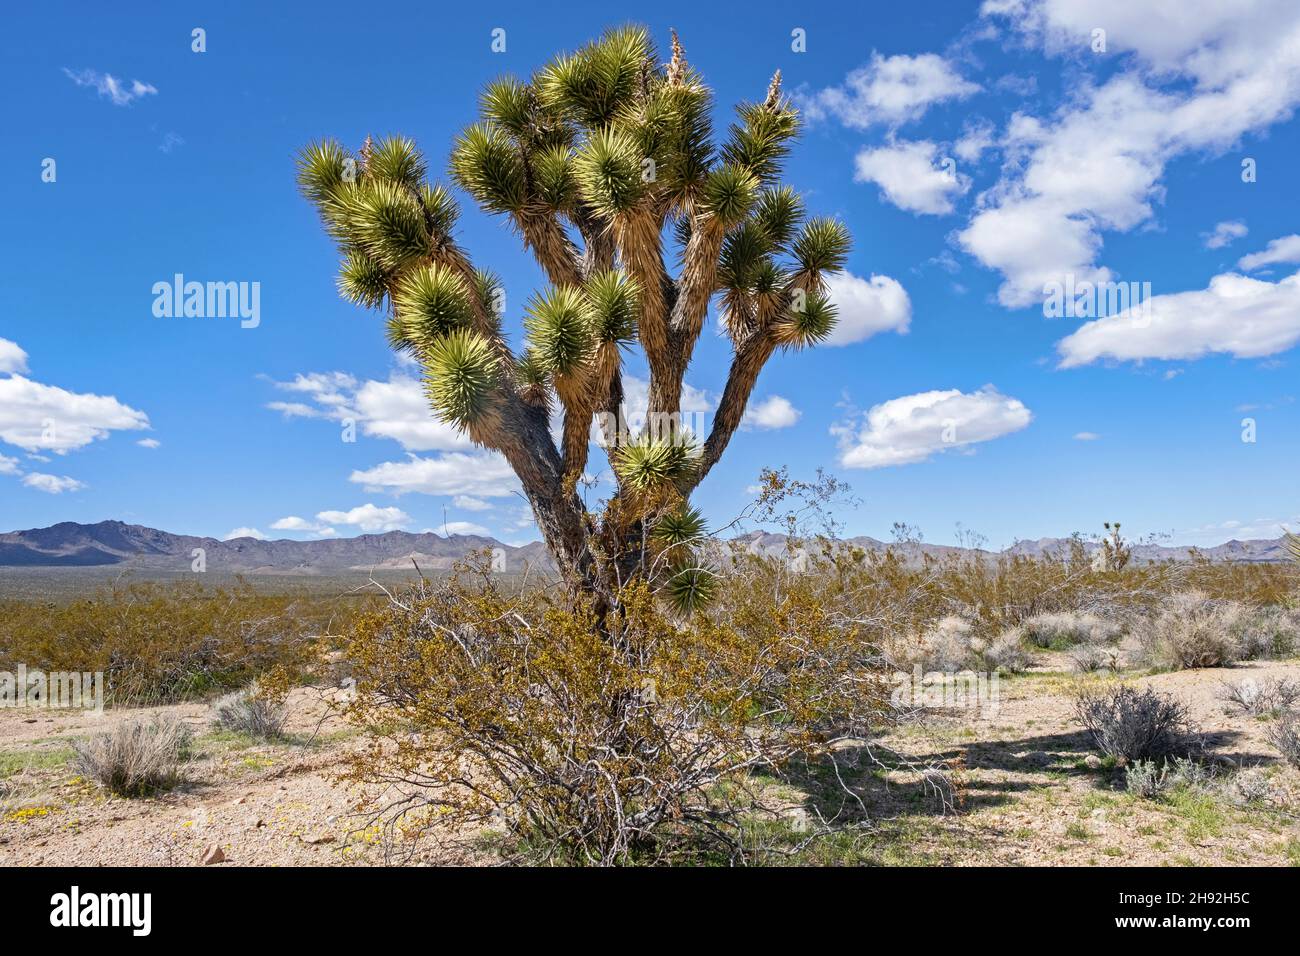 Joshua tree / yucca palm (yucca brevifolia) en la Reserva Nacional Mojave en el Desierto Mojave del Condado de San Bernardino, California, Estados Unidos Foto de stock